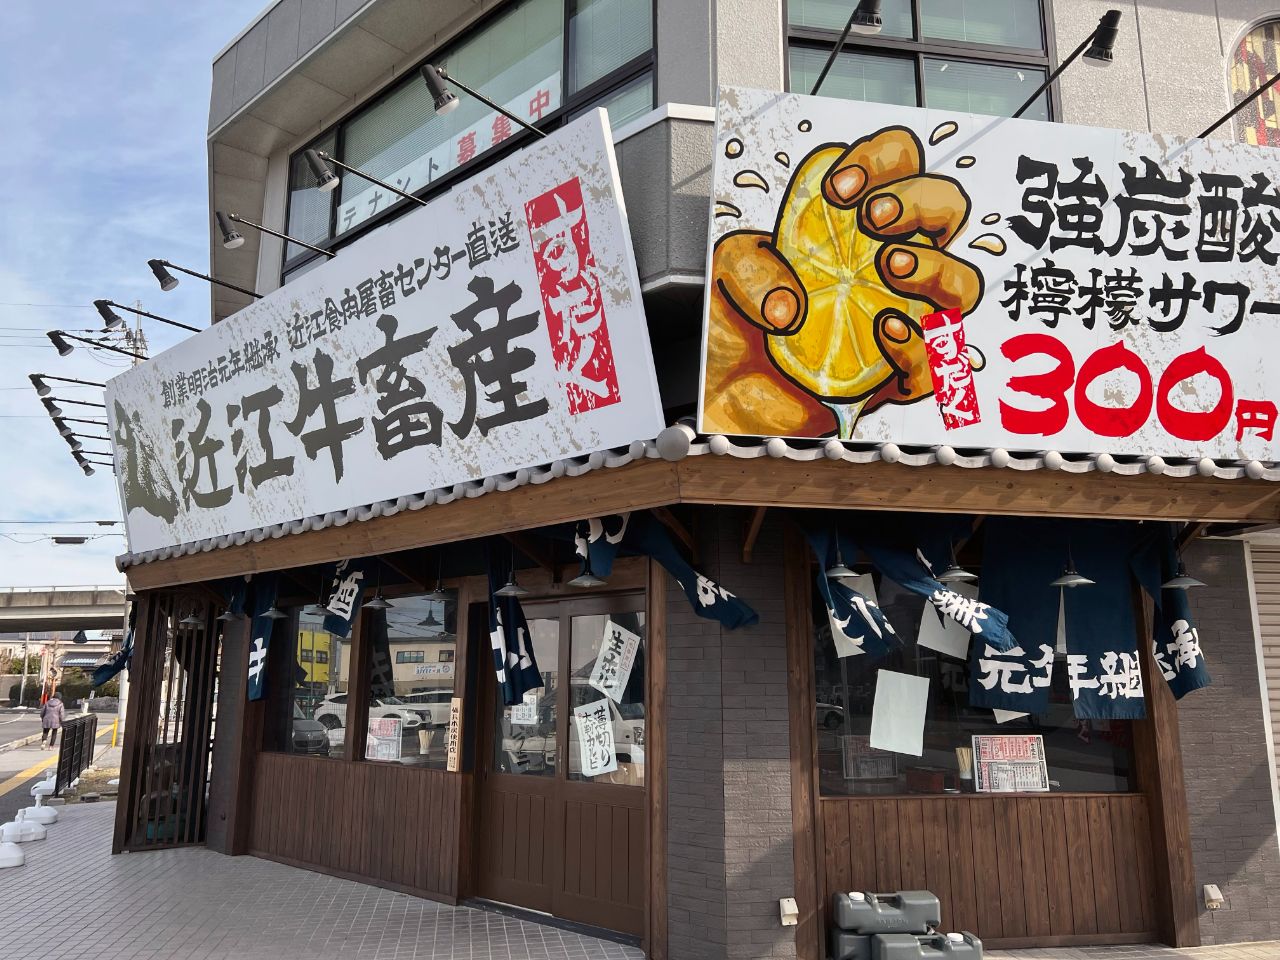 彦根市の「近江焼肉ホルモンすだく 南彦根店」が店名も新たに「キンキン麦酒とプリッと小腸 近江牛畜産すだく」としてリニューアルオープンしています。毎日生ビール190円の破格値です！